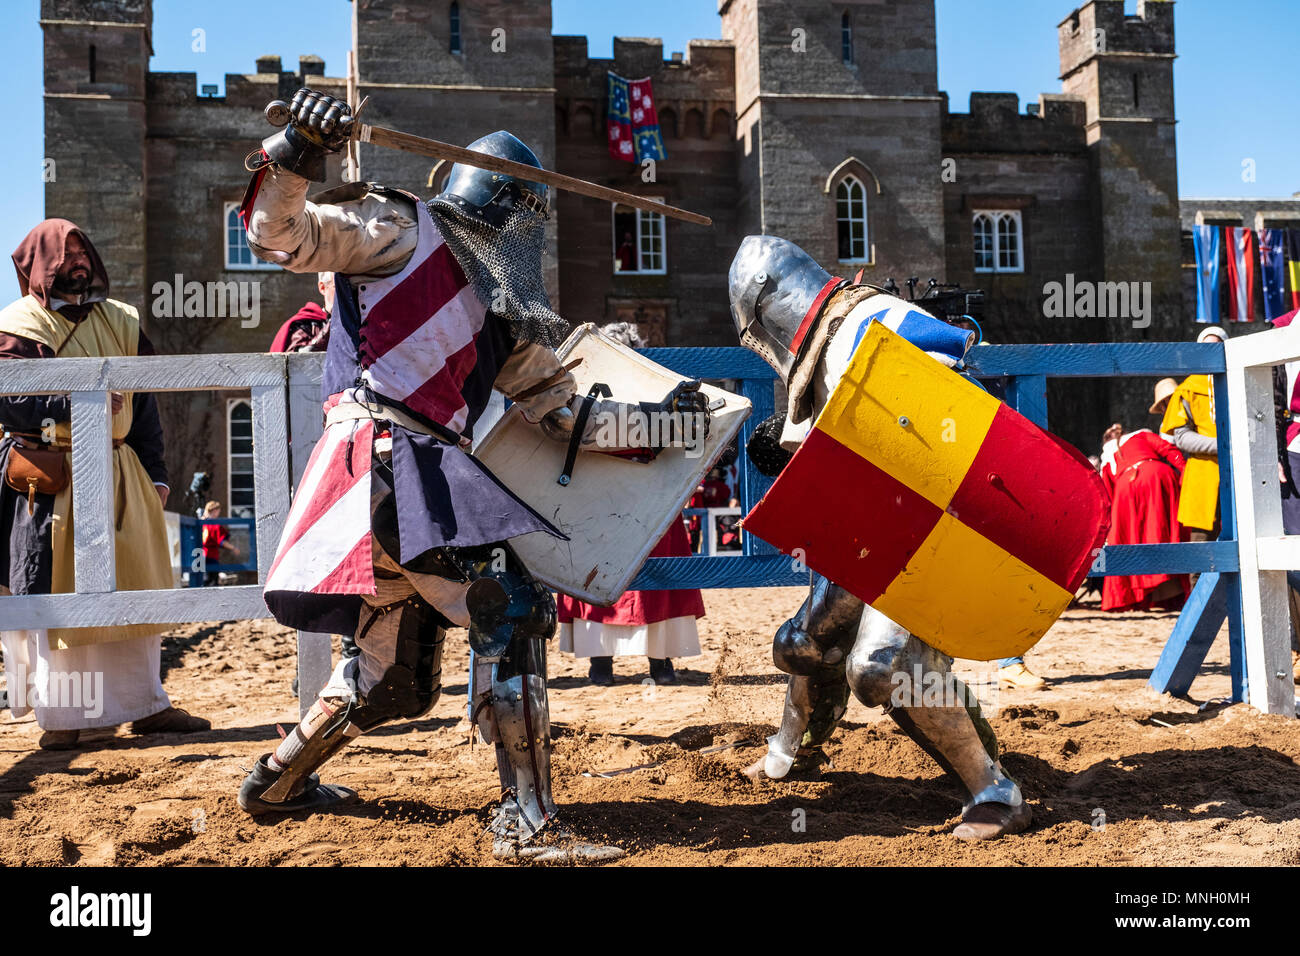 Deux chevaliers combattre en liste au cours de la Fédération Internationale de combat médiéval (CCGE) Championnats du monde à Scone Palace le 12 mai 2018 à Scone Pa Banque D'Images